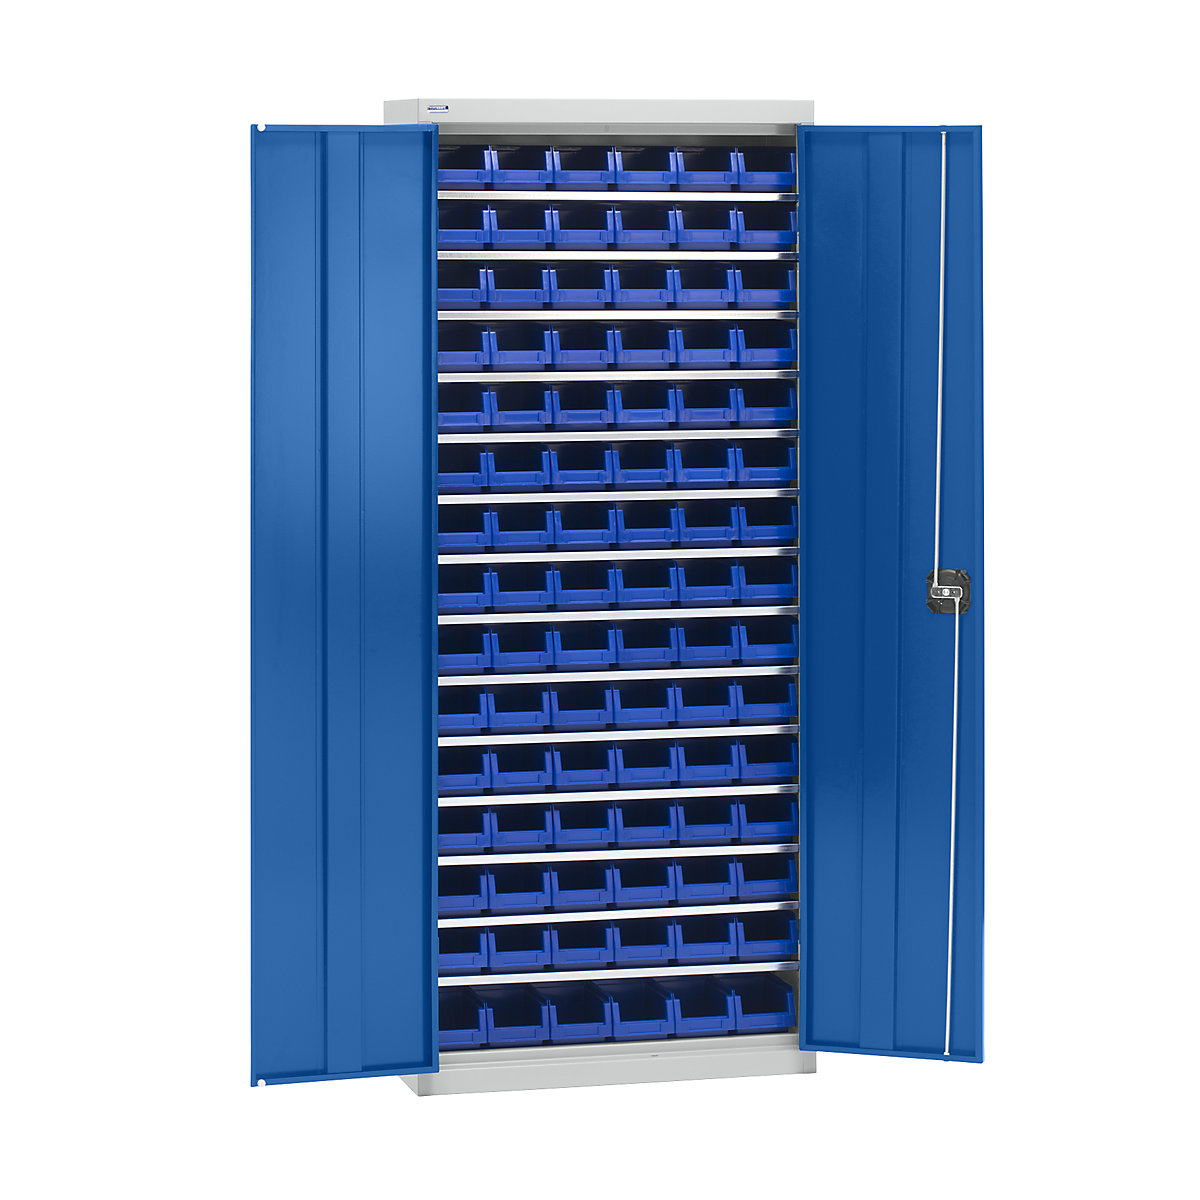 Materiaalkast met magazijnbakken – eurokraft pro, hoogte 1575 mm, 14 legborden, lichtgrijs / gentiaanblauw-6